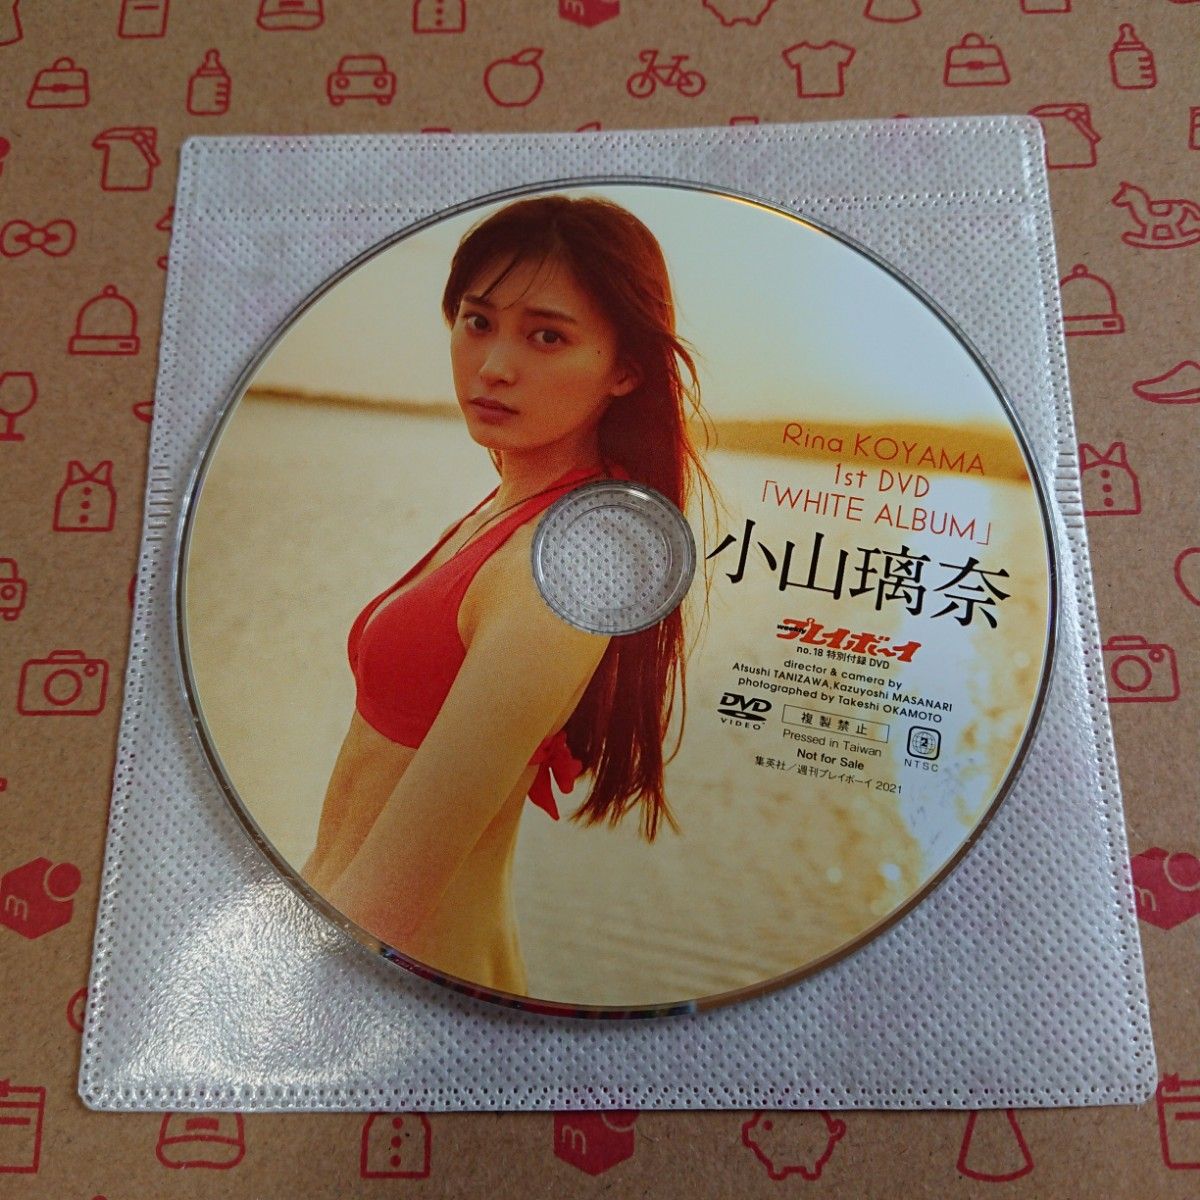 小山瑠奈 DVD 雑誌付録